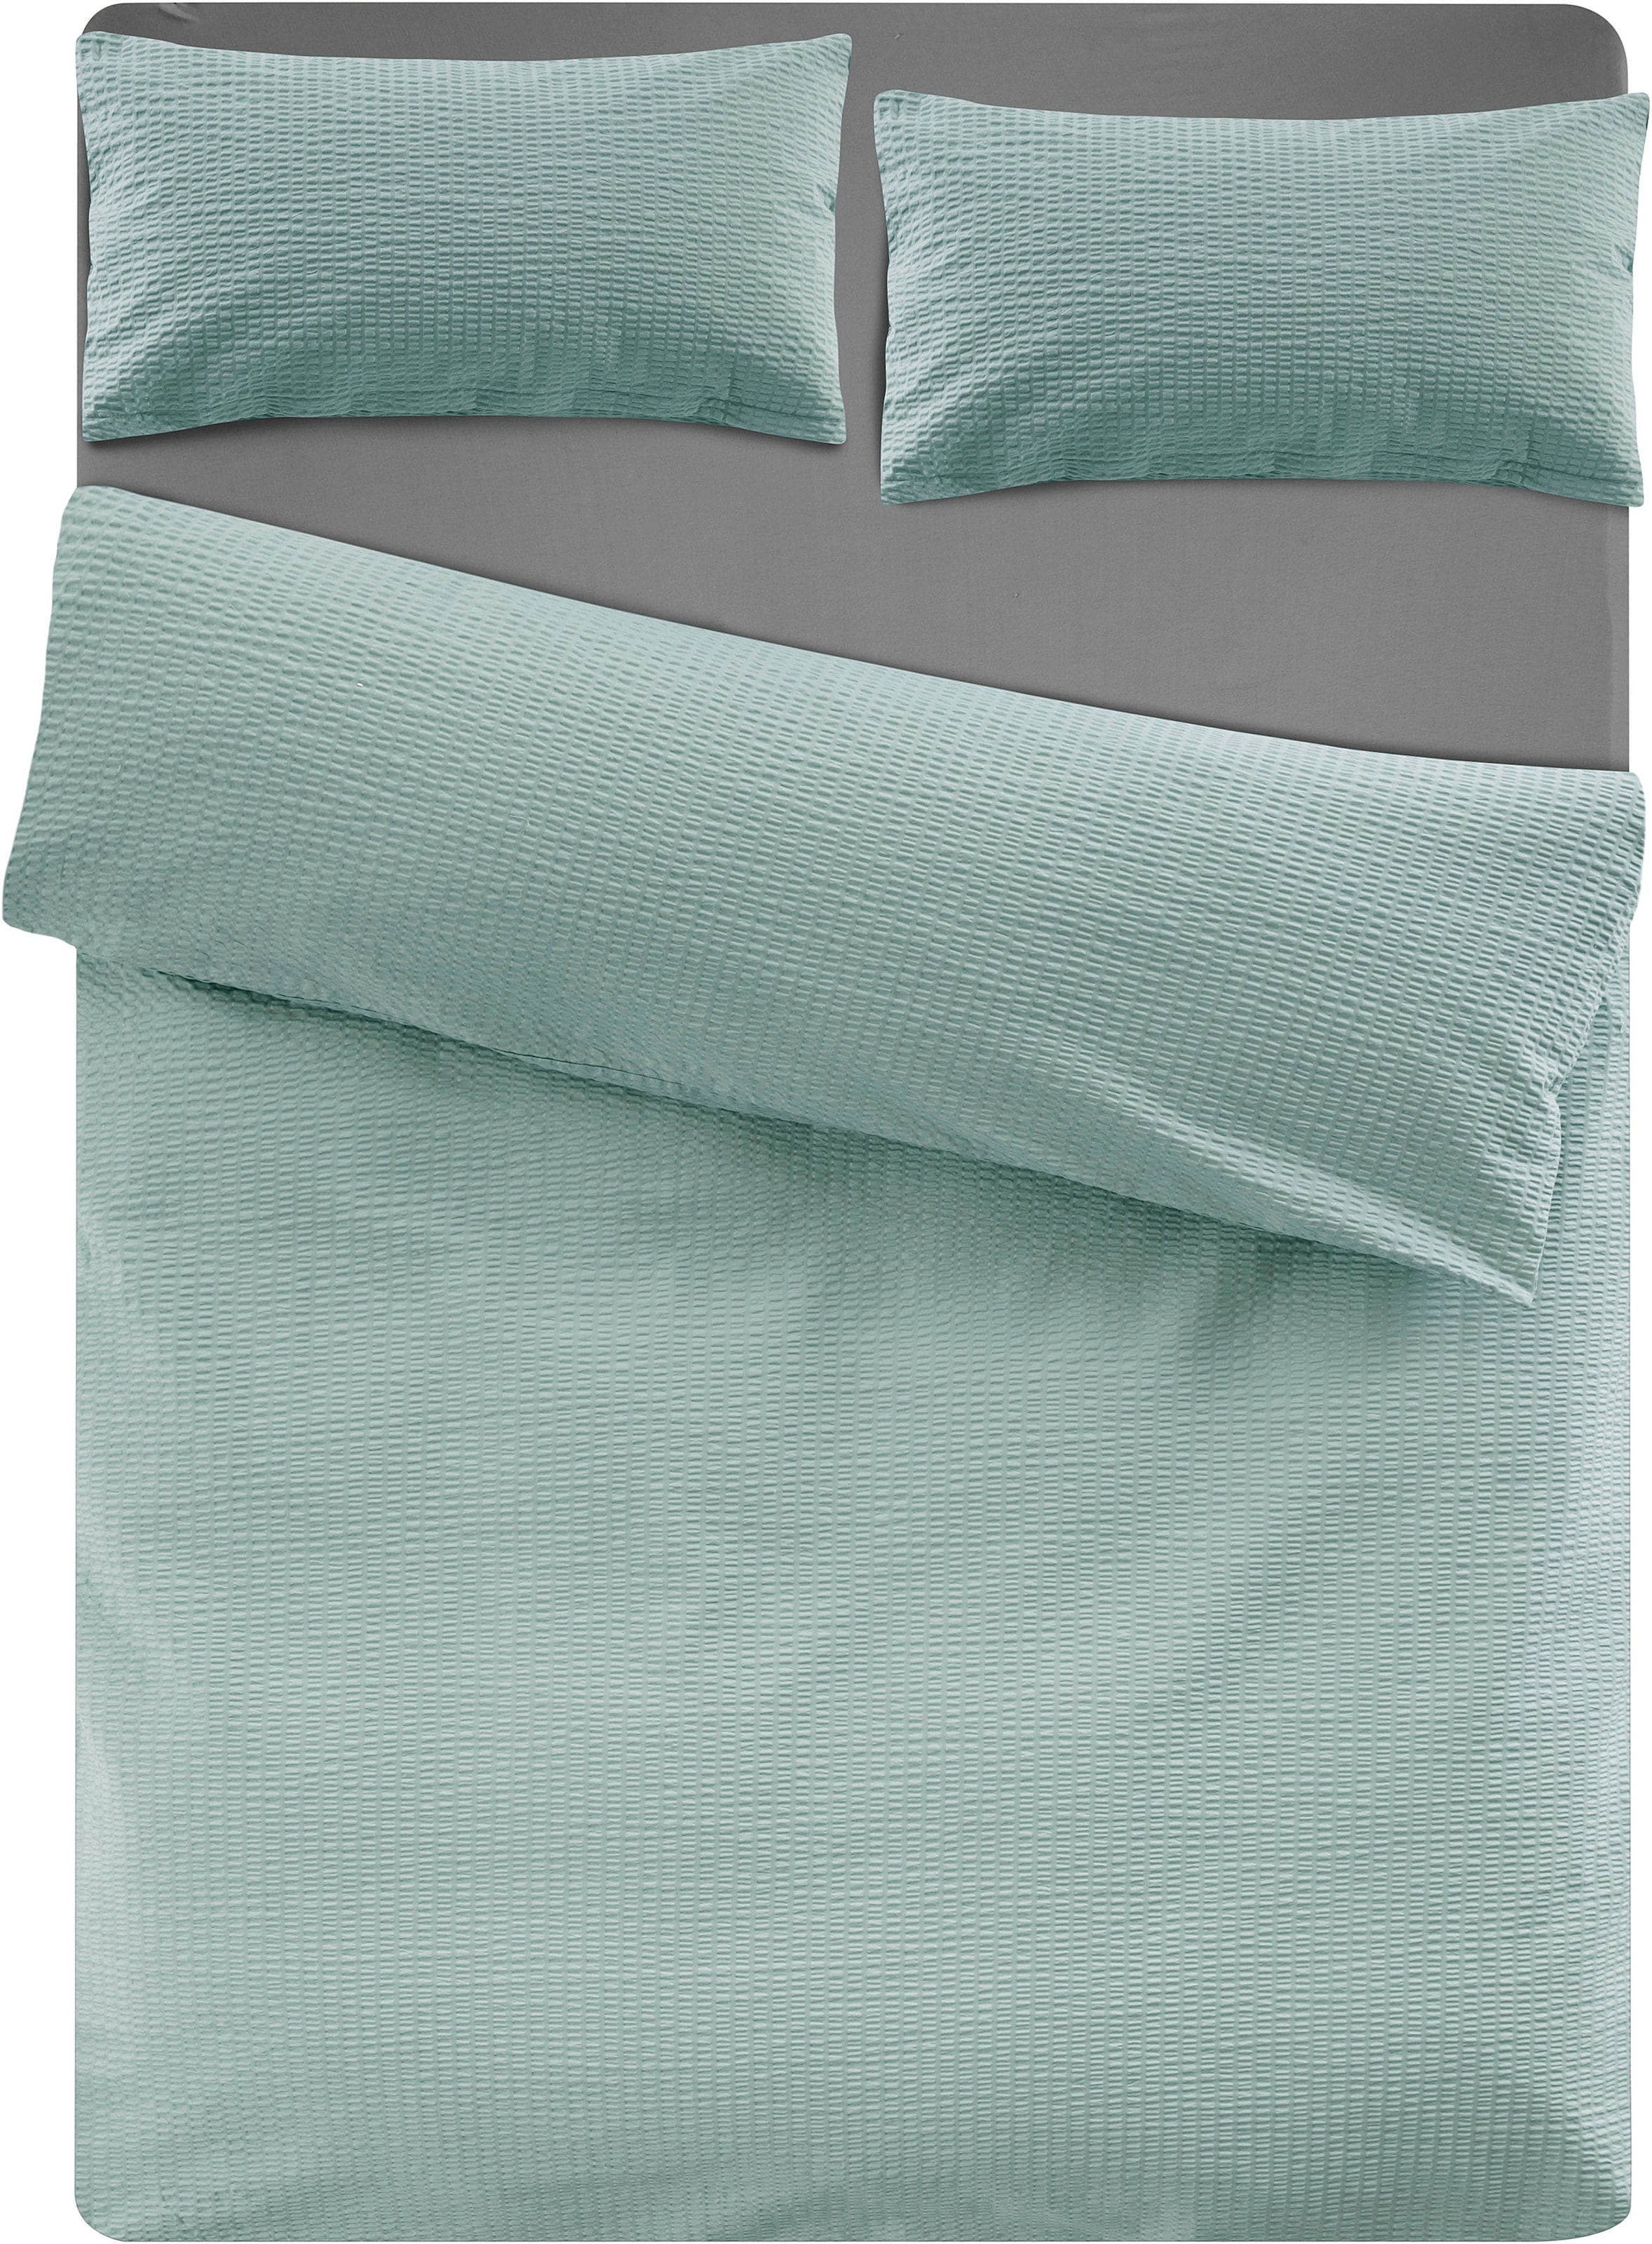 andas Bettwäsche »Sari2 in Gr. 135x200 oder 155x220 cm«, (2 tlg.), aus  Baumwolle, uni Bettwäsche in Seersucker Qualität ideal für Sommer